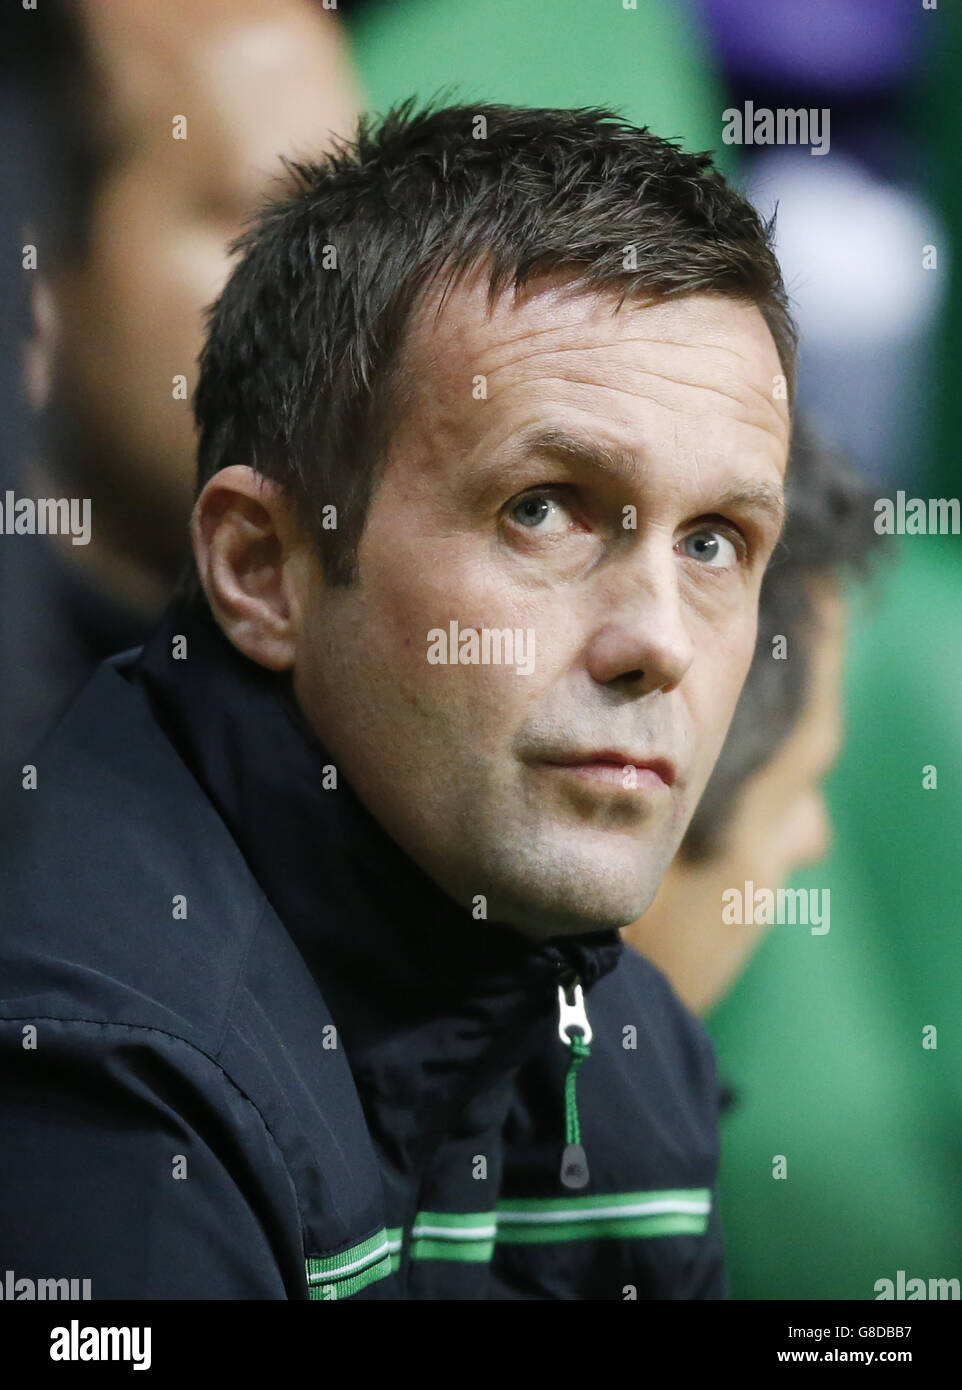 Il manager celtico Ronny Deila durante la partita della UEFA Europa League al Celtic Park di Glasgow. Foto Stock